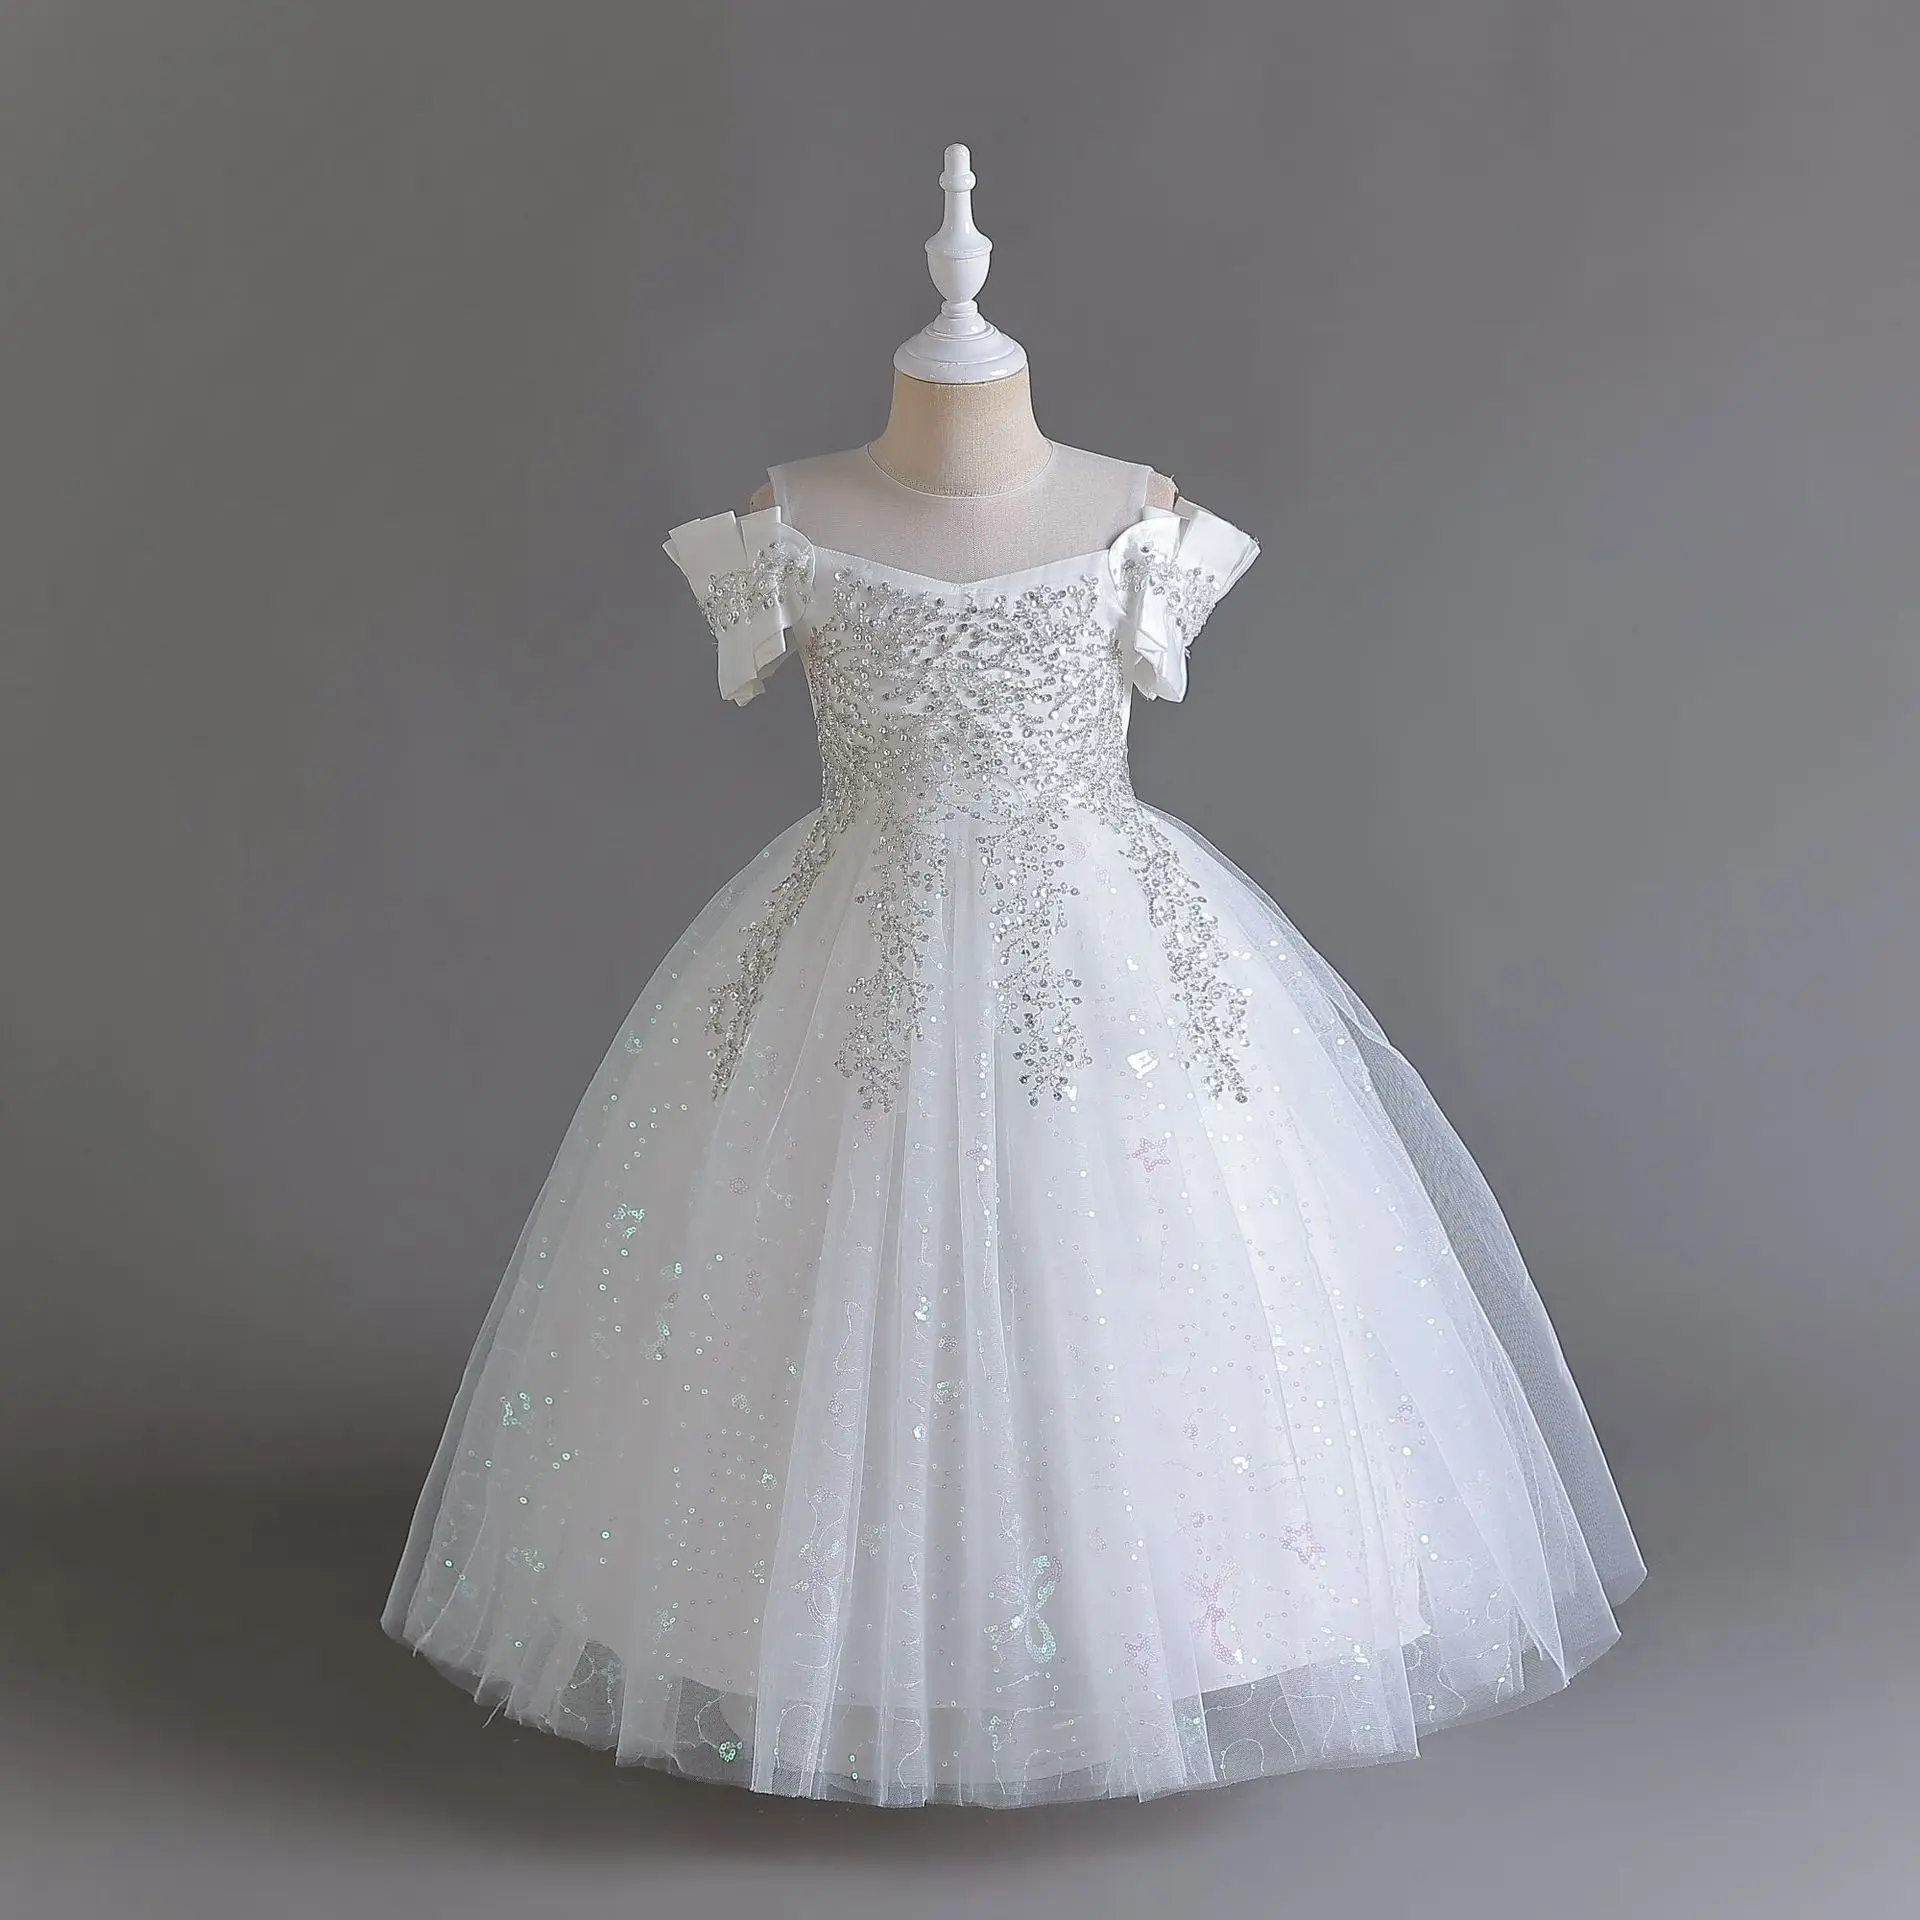 

Элегантное белое платье принцессы для девочек Серебристая детская длинная вечерняя одежда для подростков Детские свадебные вечерние платья для выпускного вечера От 5 до 14 лет